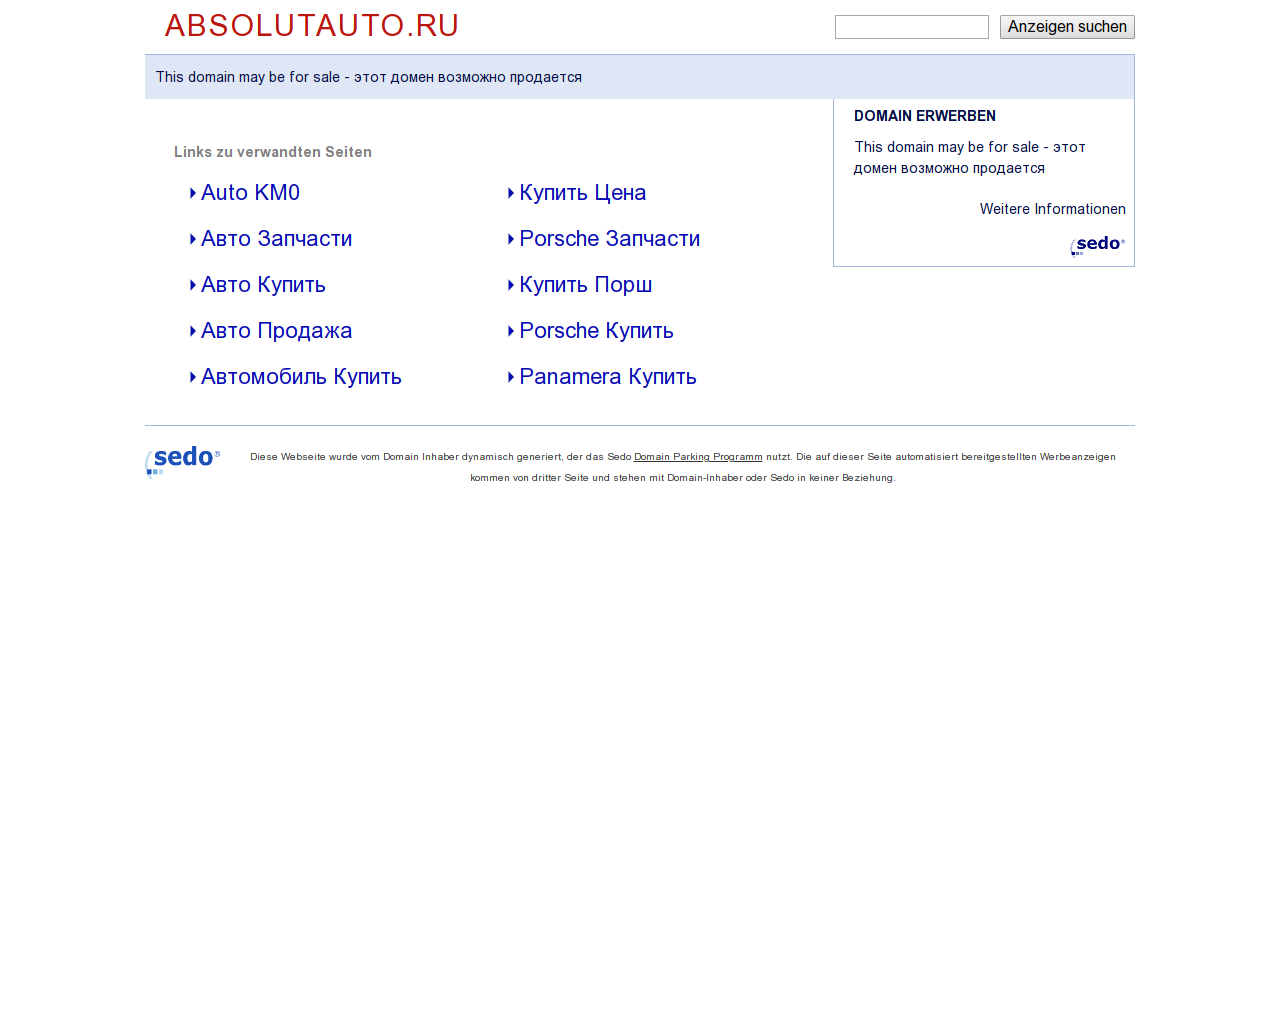 Изображение сайта absolutauto.ru в разрешении 1280x1024